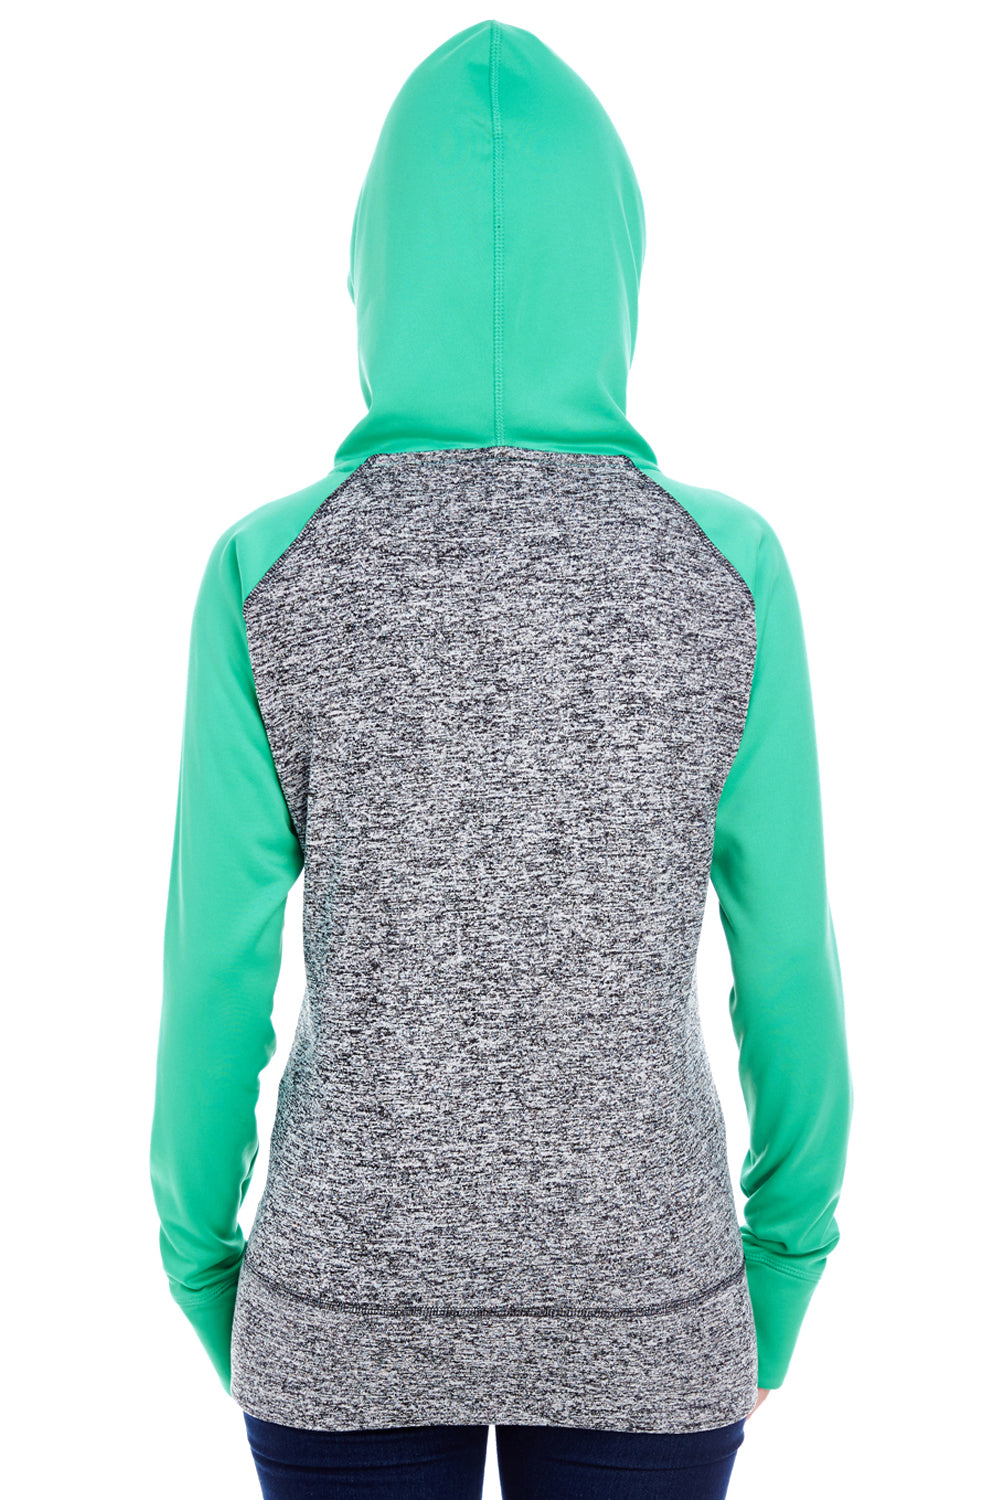 J America JA8618 Womens Cosmic Fleece Hooded Sweatshirt Hoodie Charcoal Grey/Emerald Green Back